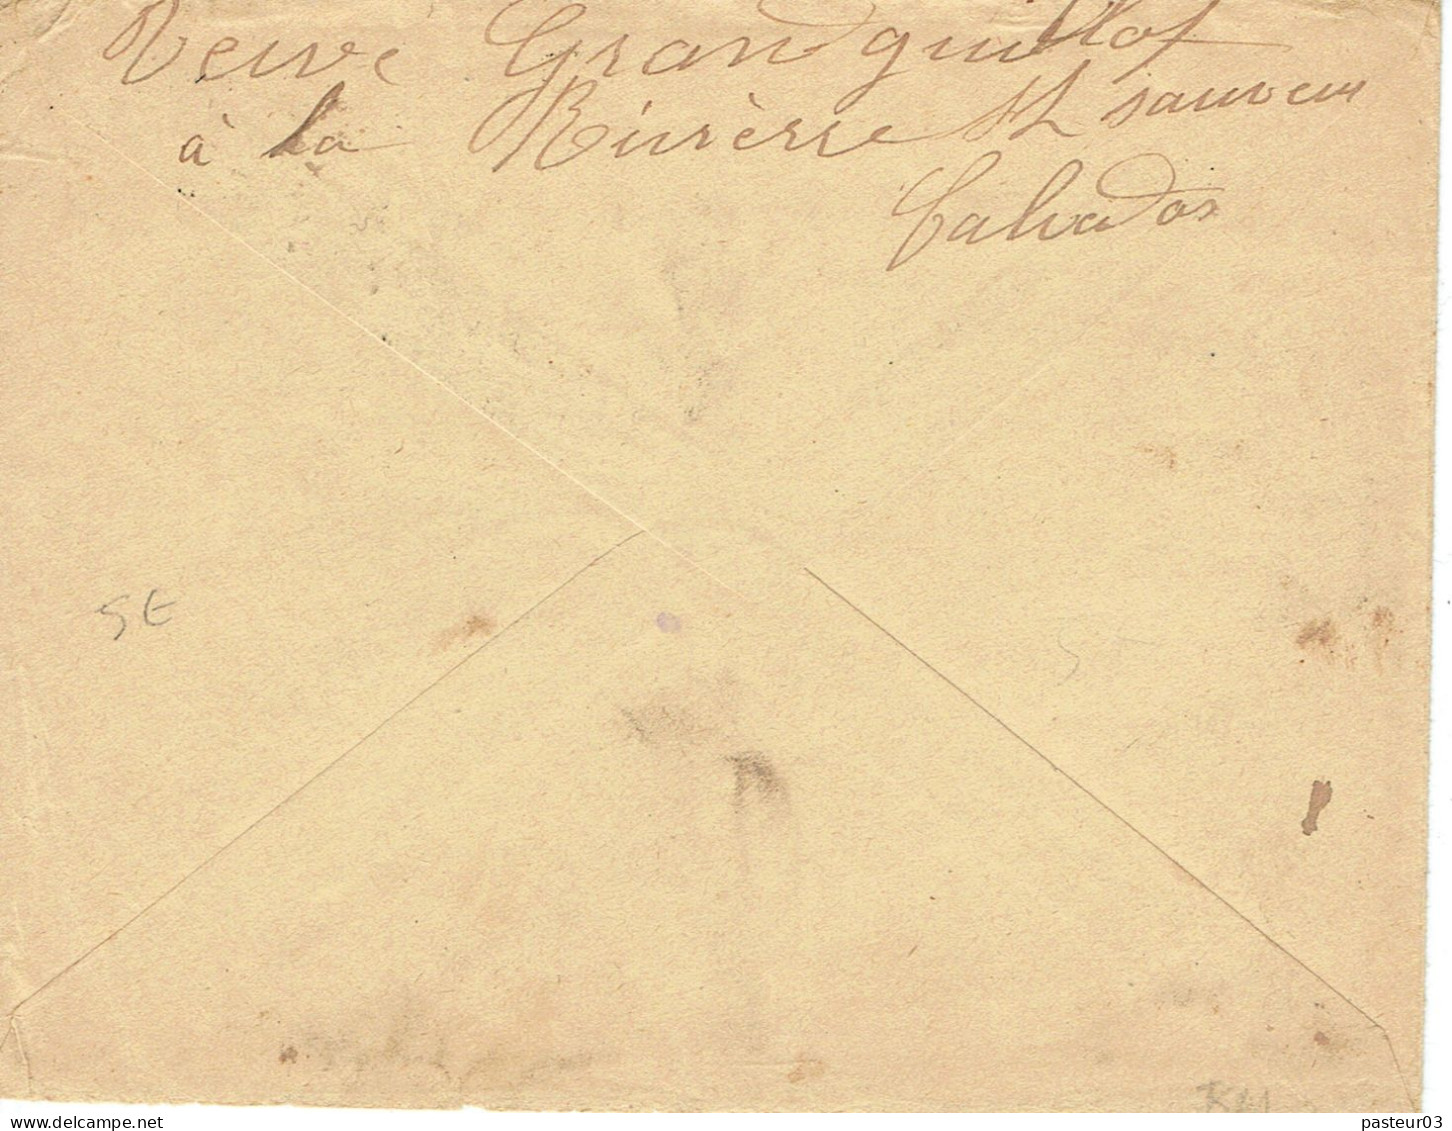 Tarifs Postaux Etranger Du 16-07-1925 (03) Pasteur N° 171 15 C. X 6 + Semeuse 10 C. Lettre 20 G. 04-09-1925 - 1922-26 Pasteur